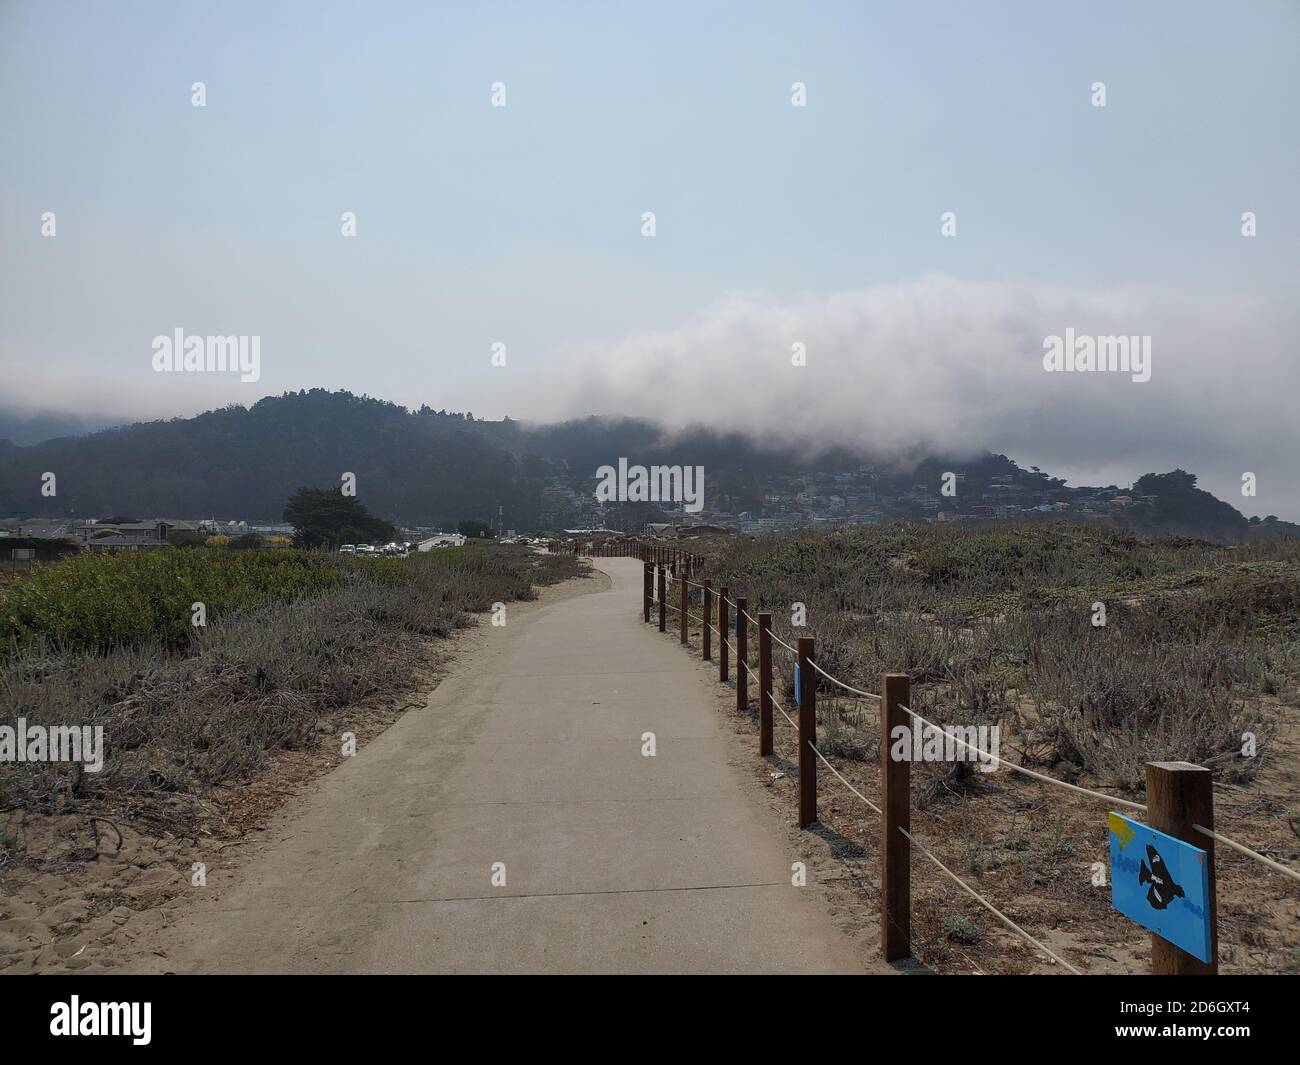 Sentiero lungo la spiaggia di pacifica, California con nebbia in lontananza, 30 agosto 2020. () Foto Stock